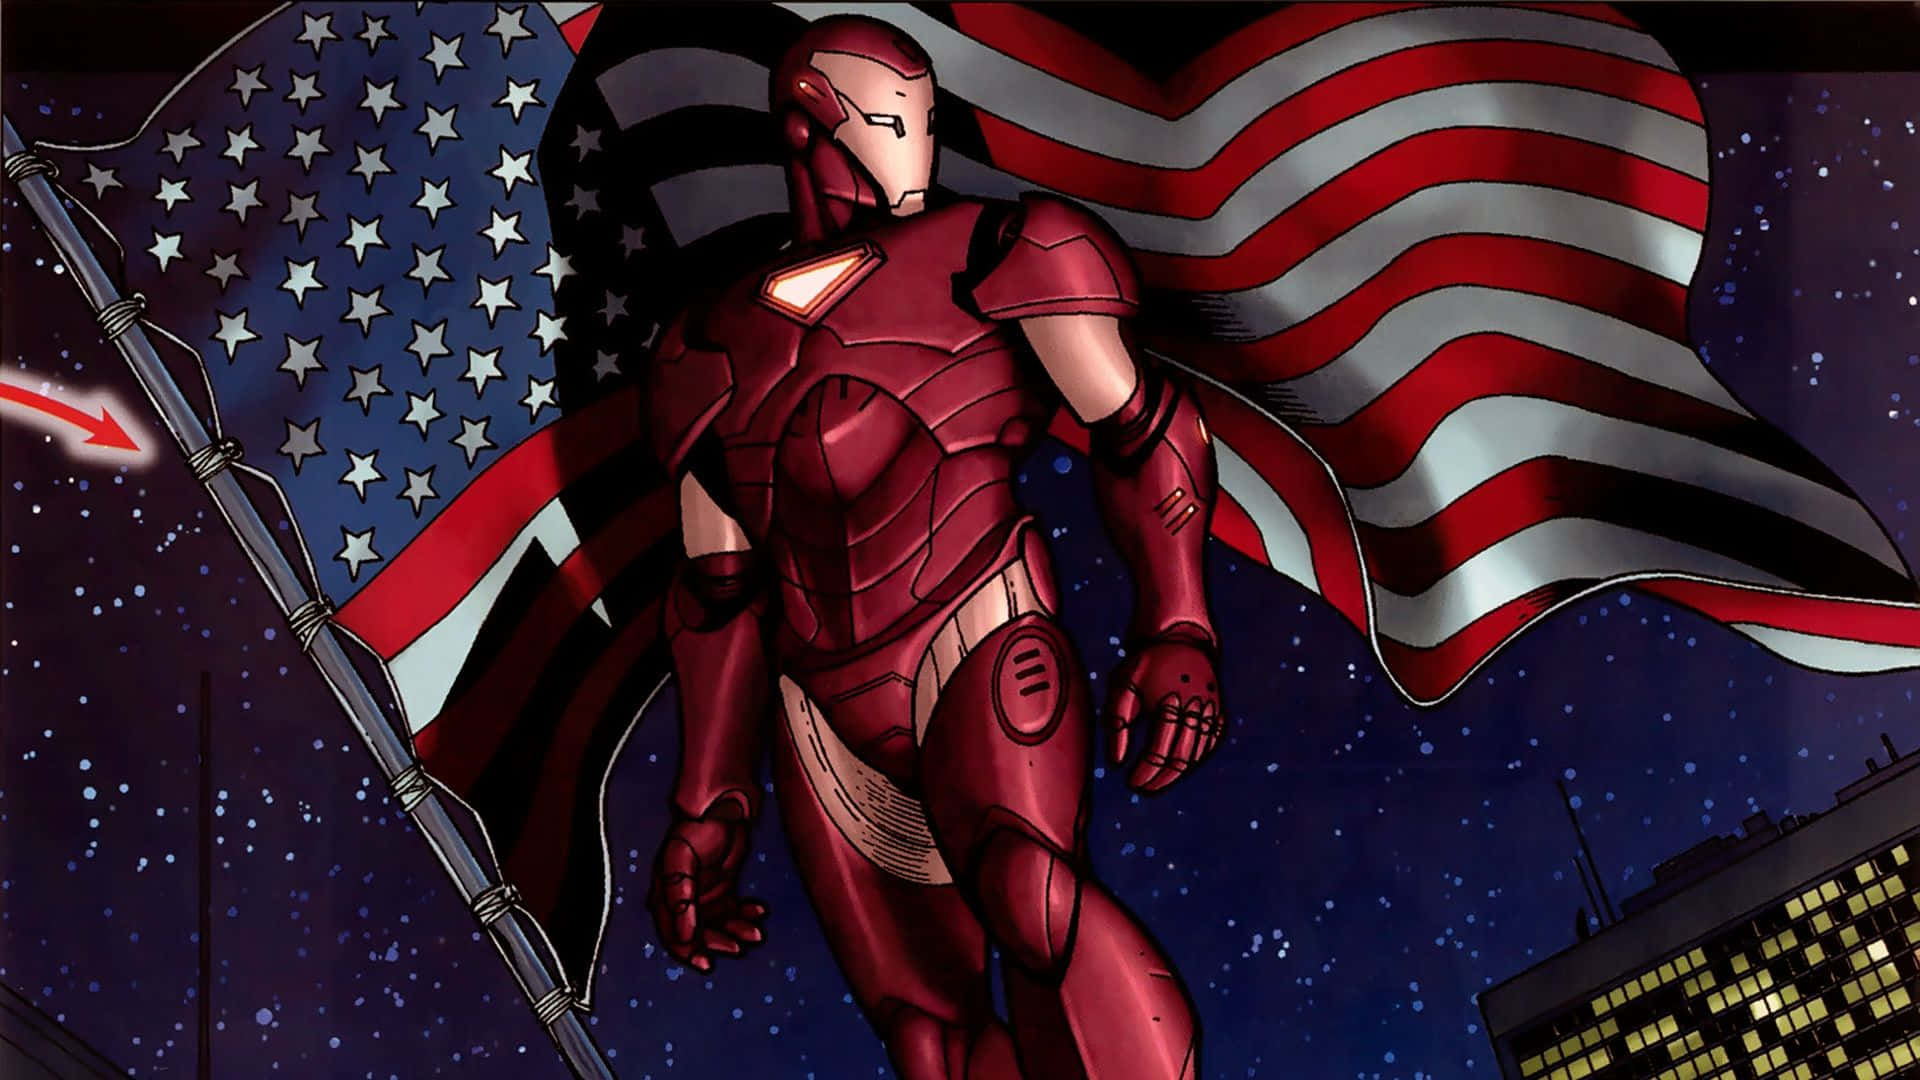 Tonystark, También Conocido Como Iron Man, Es El Superhéroe Del Universo Marvel. Fondo de pantalla